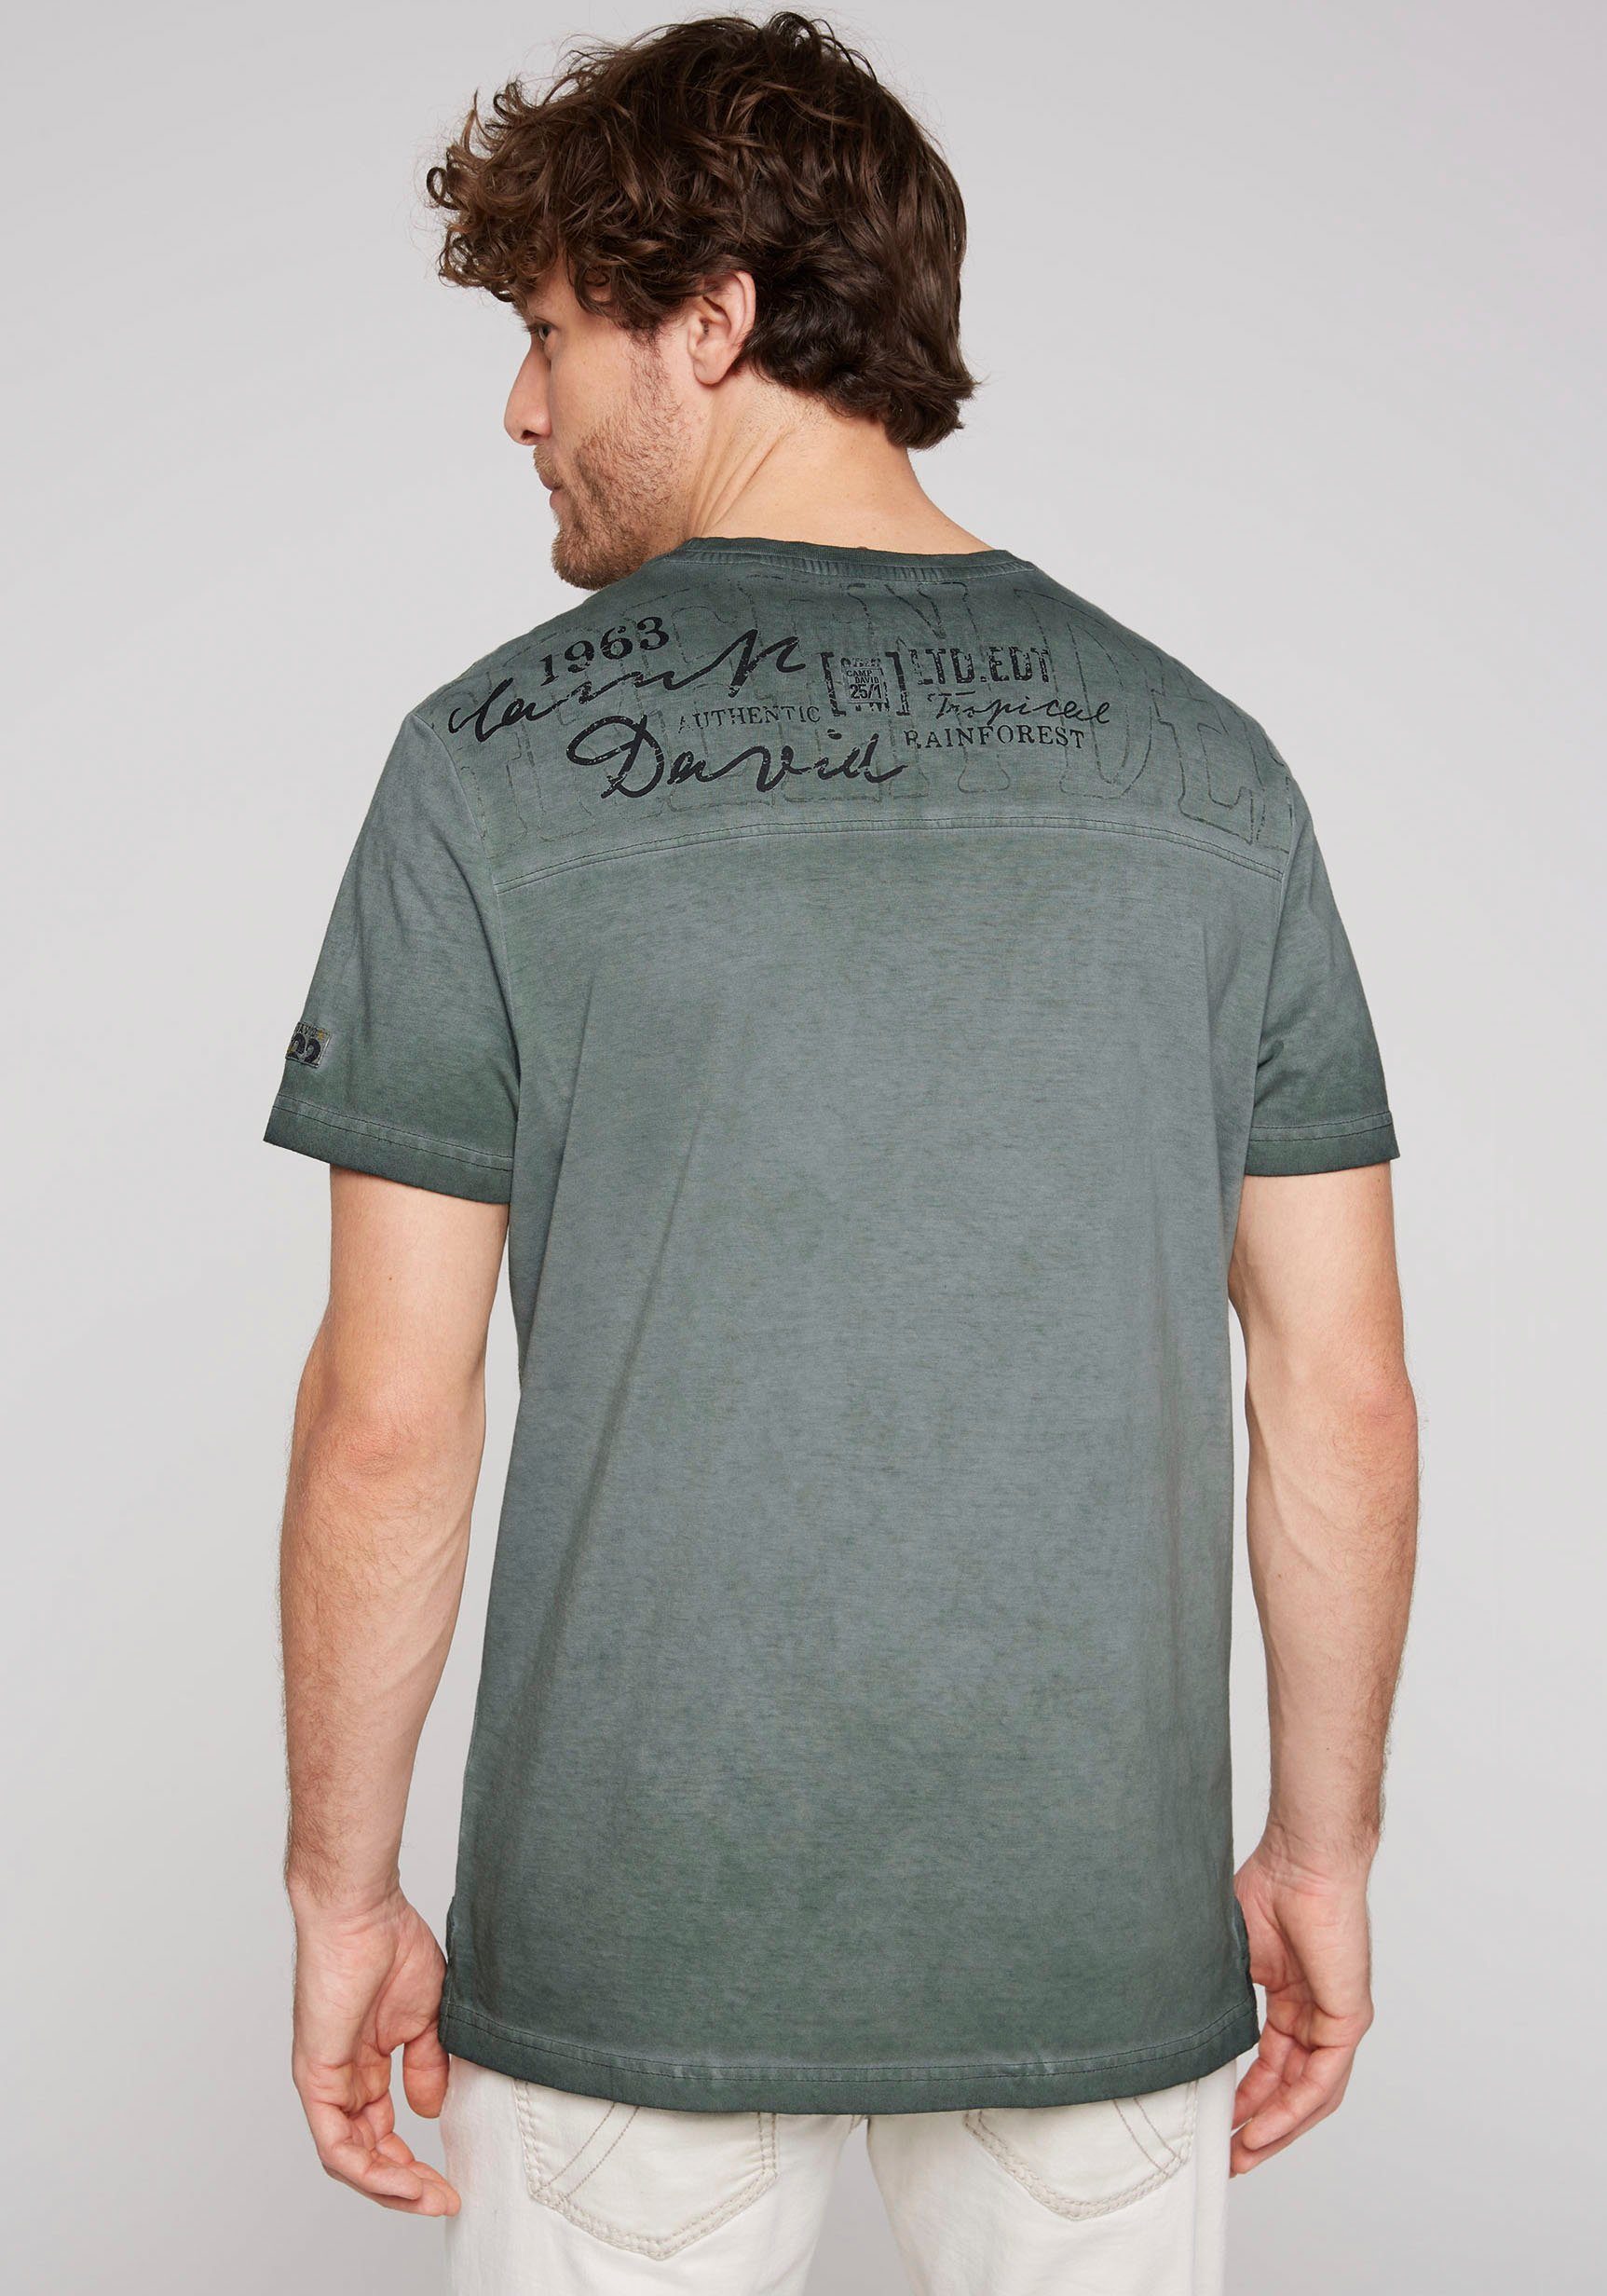 green CAMP Seitenschlitzen DAVID T-Shirt shadow mit